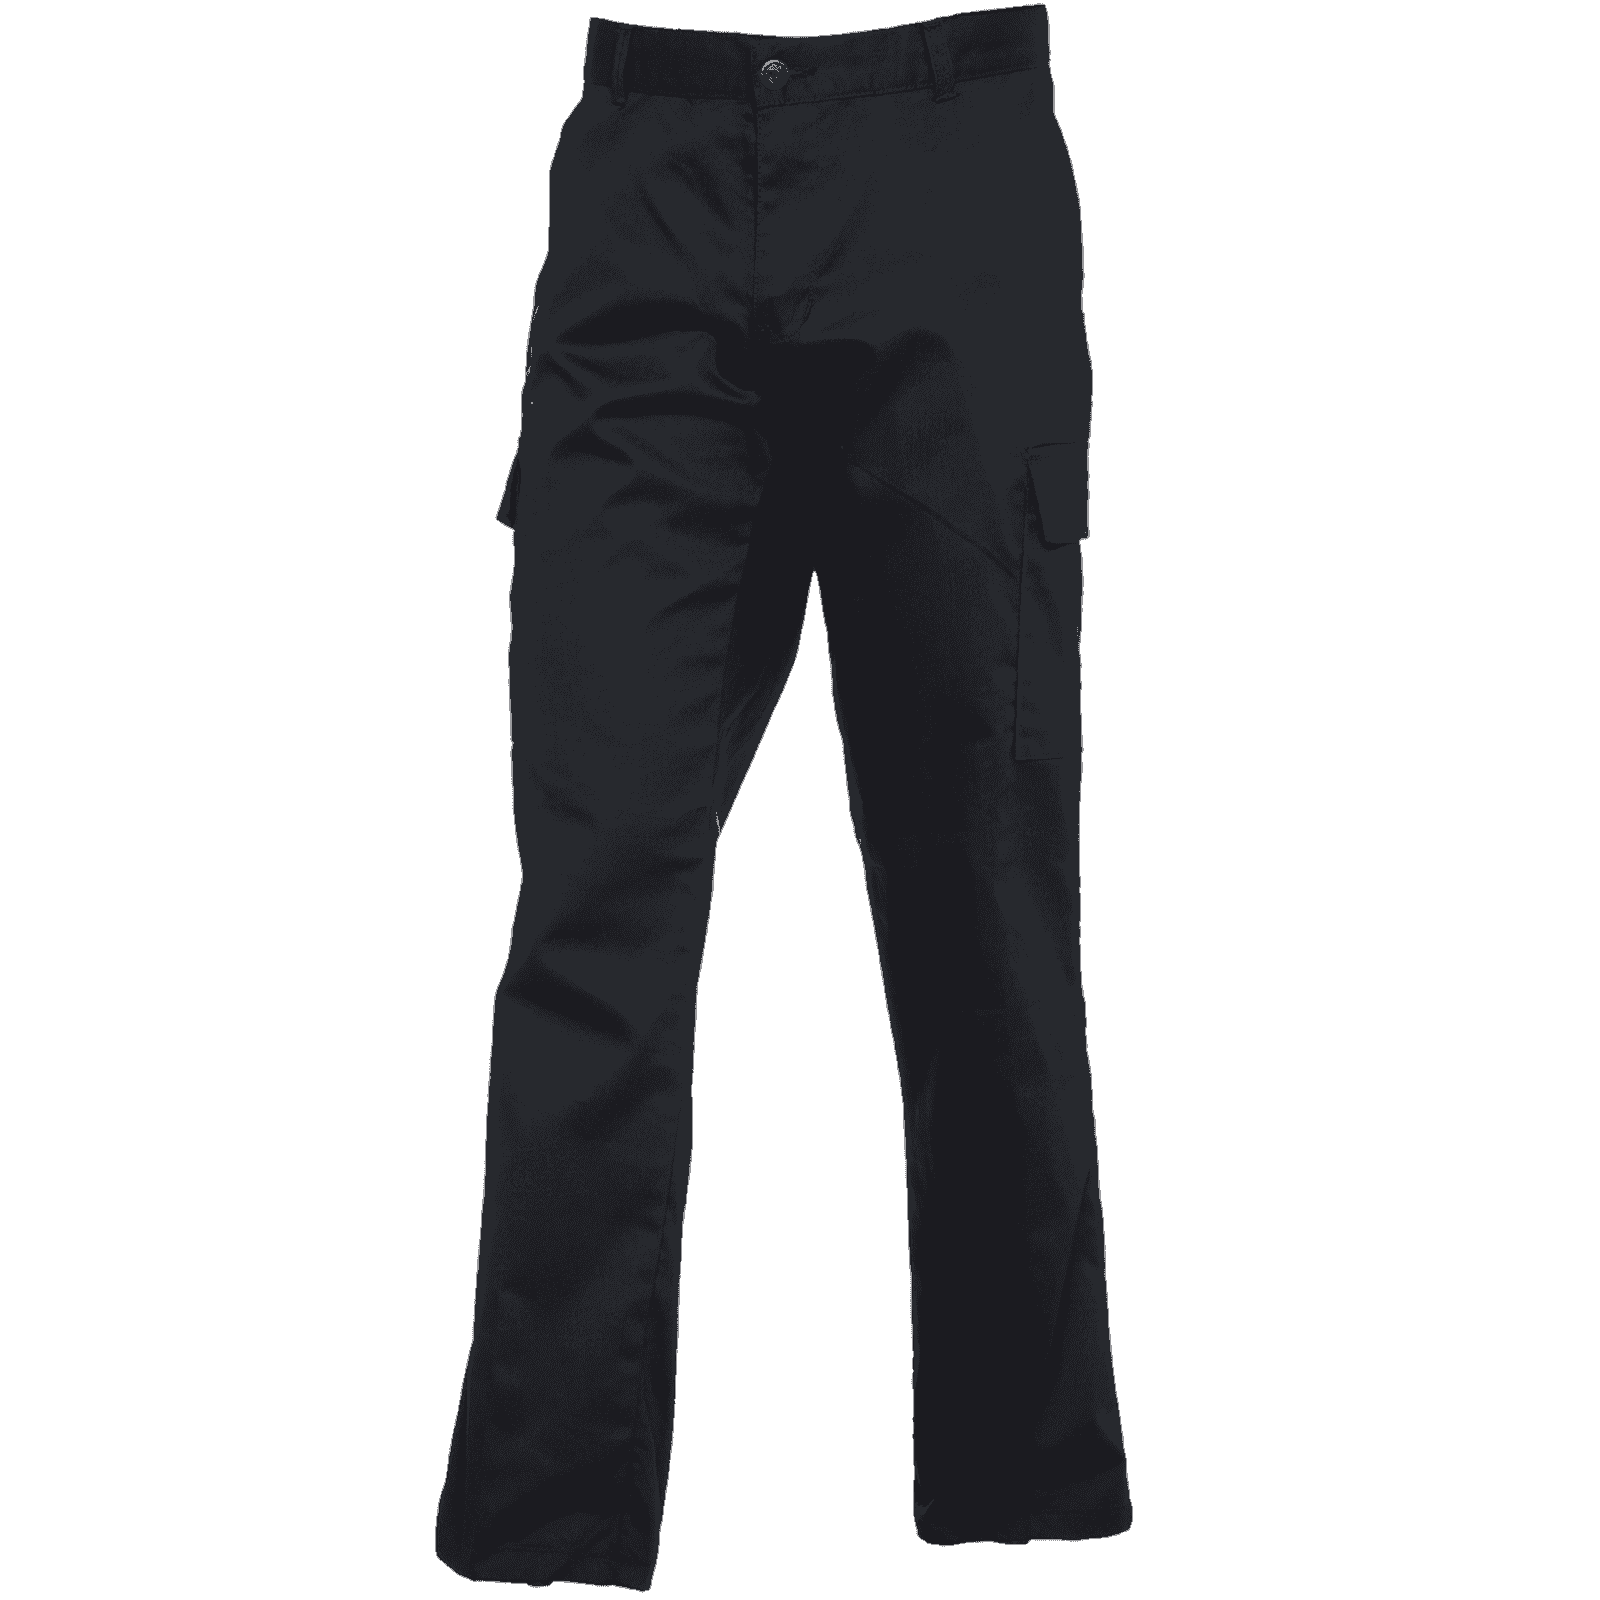 Women's Cargo Work Trousers UC905 Uneek Black